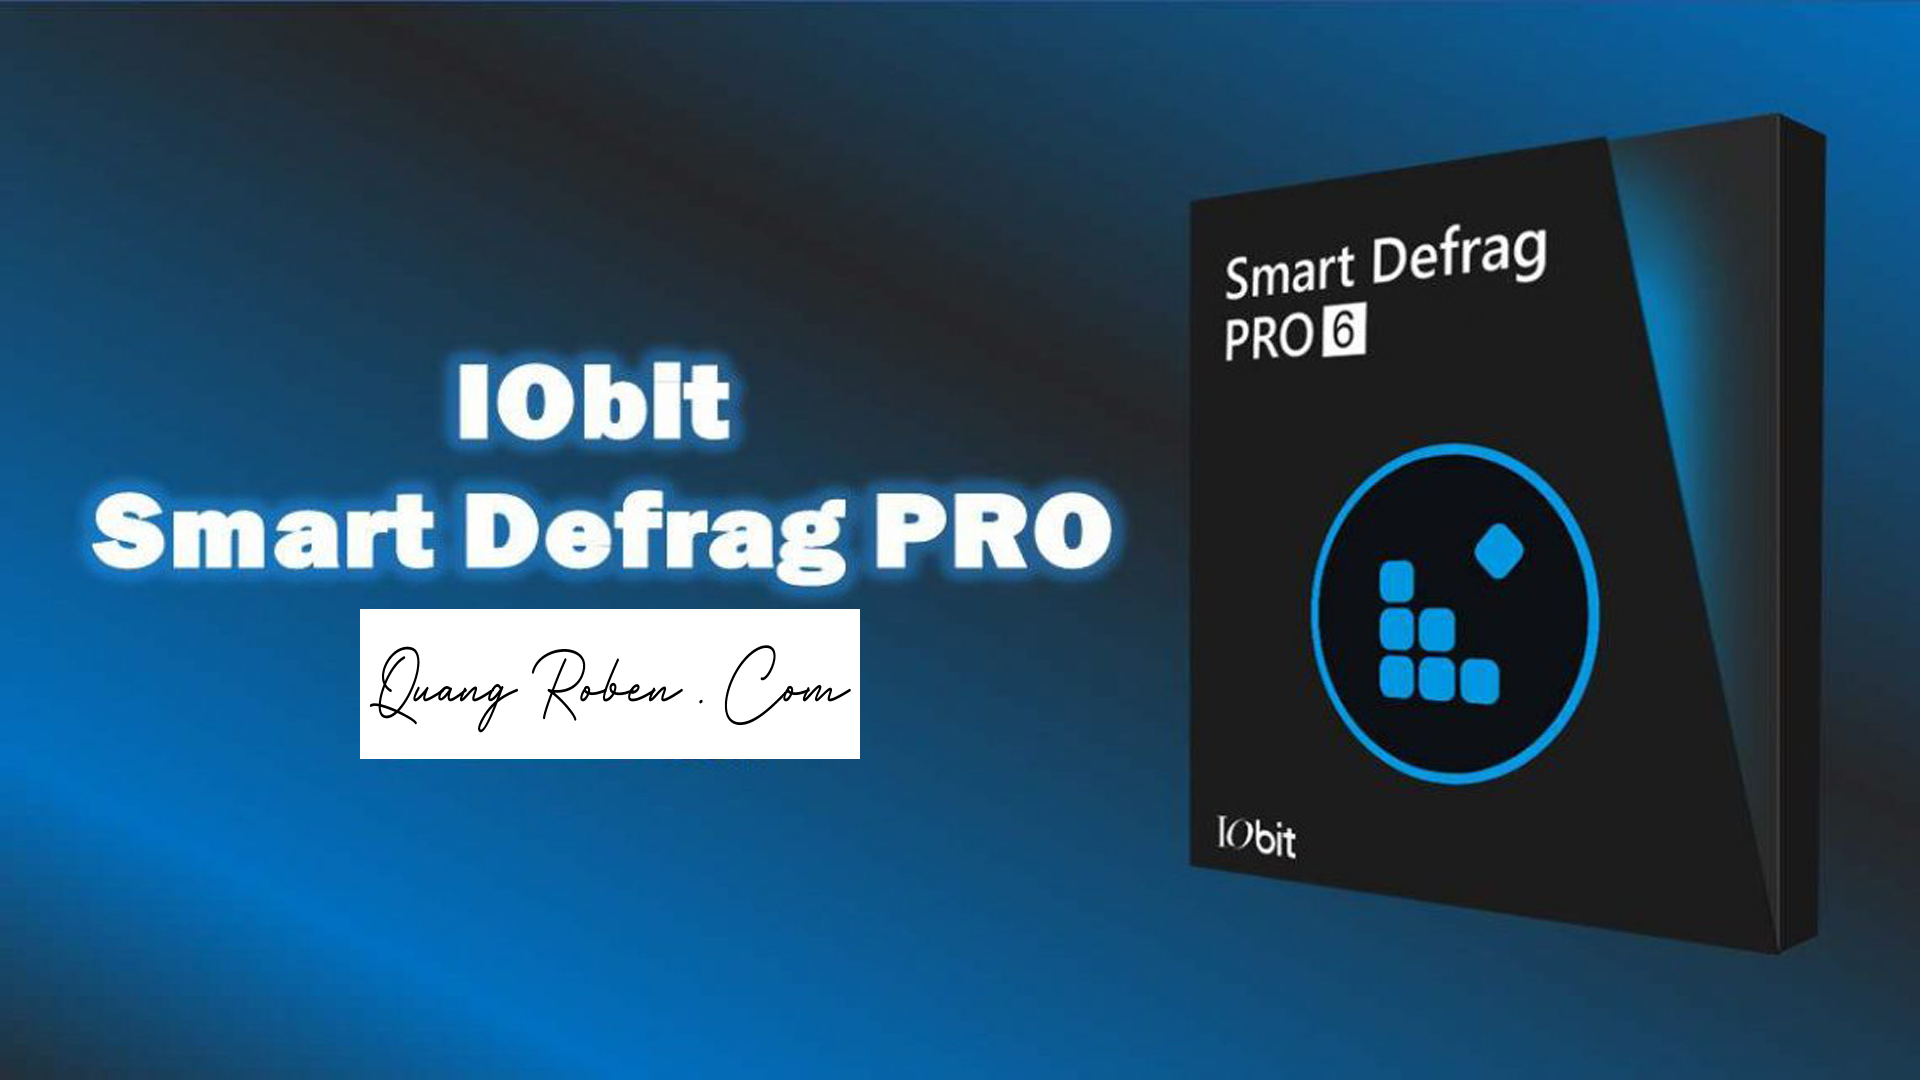 IObit Smart Defrag 9.0.0.307 for apple instal free